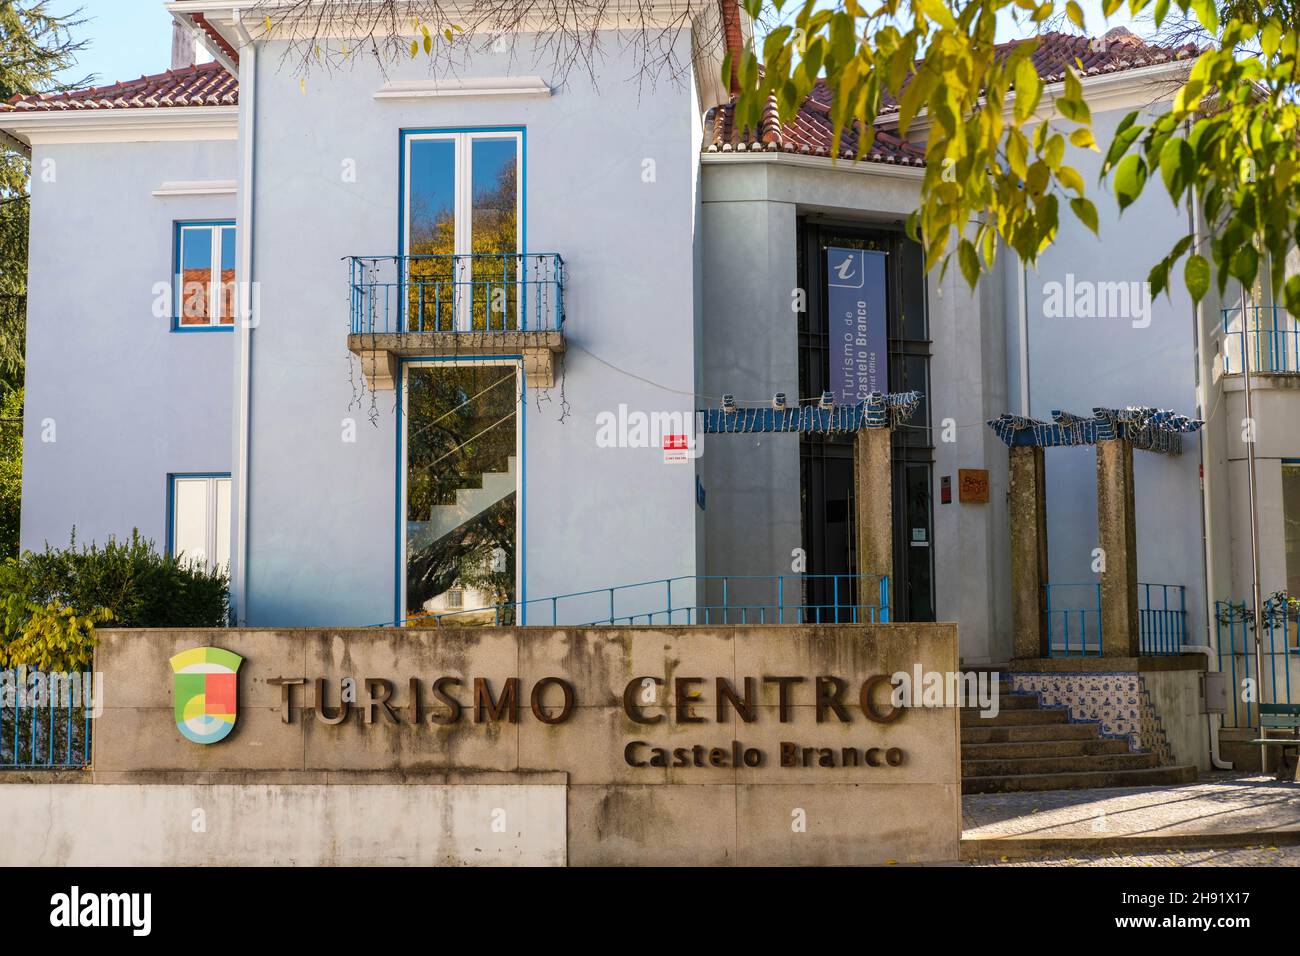 Castelo Branco, Portugal - December 02 2021: Castelo Branco tourism center in central Portugal Stock Photo